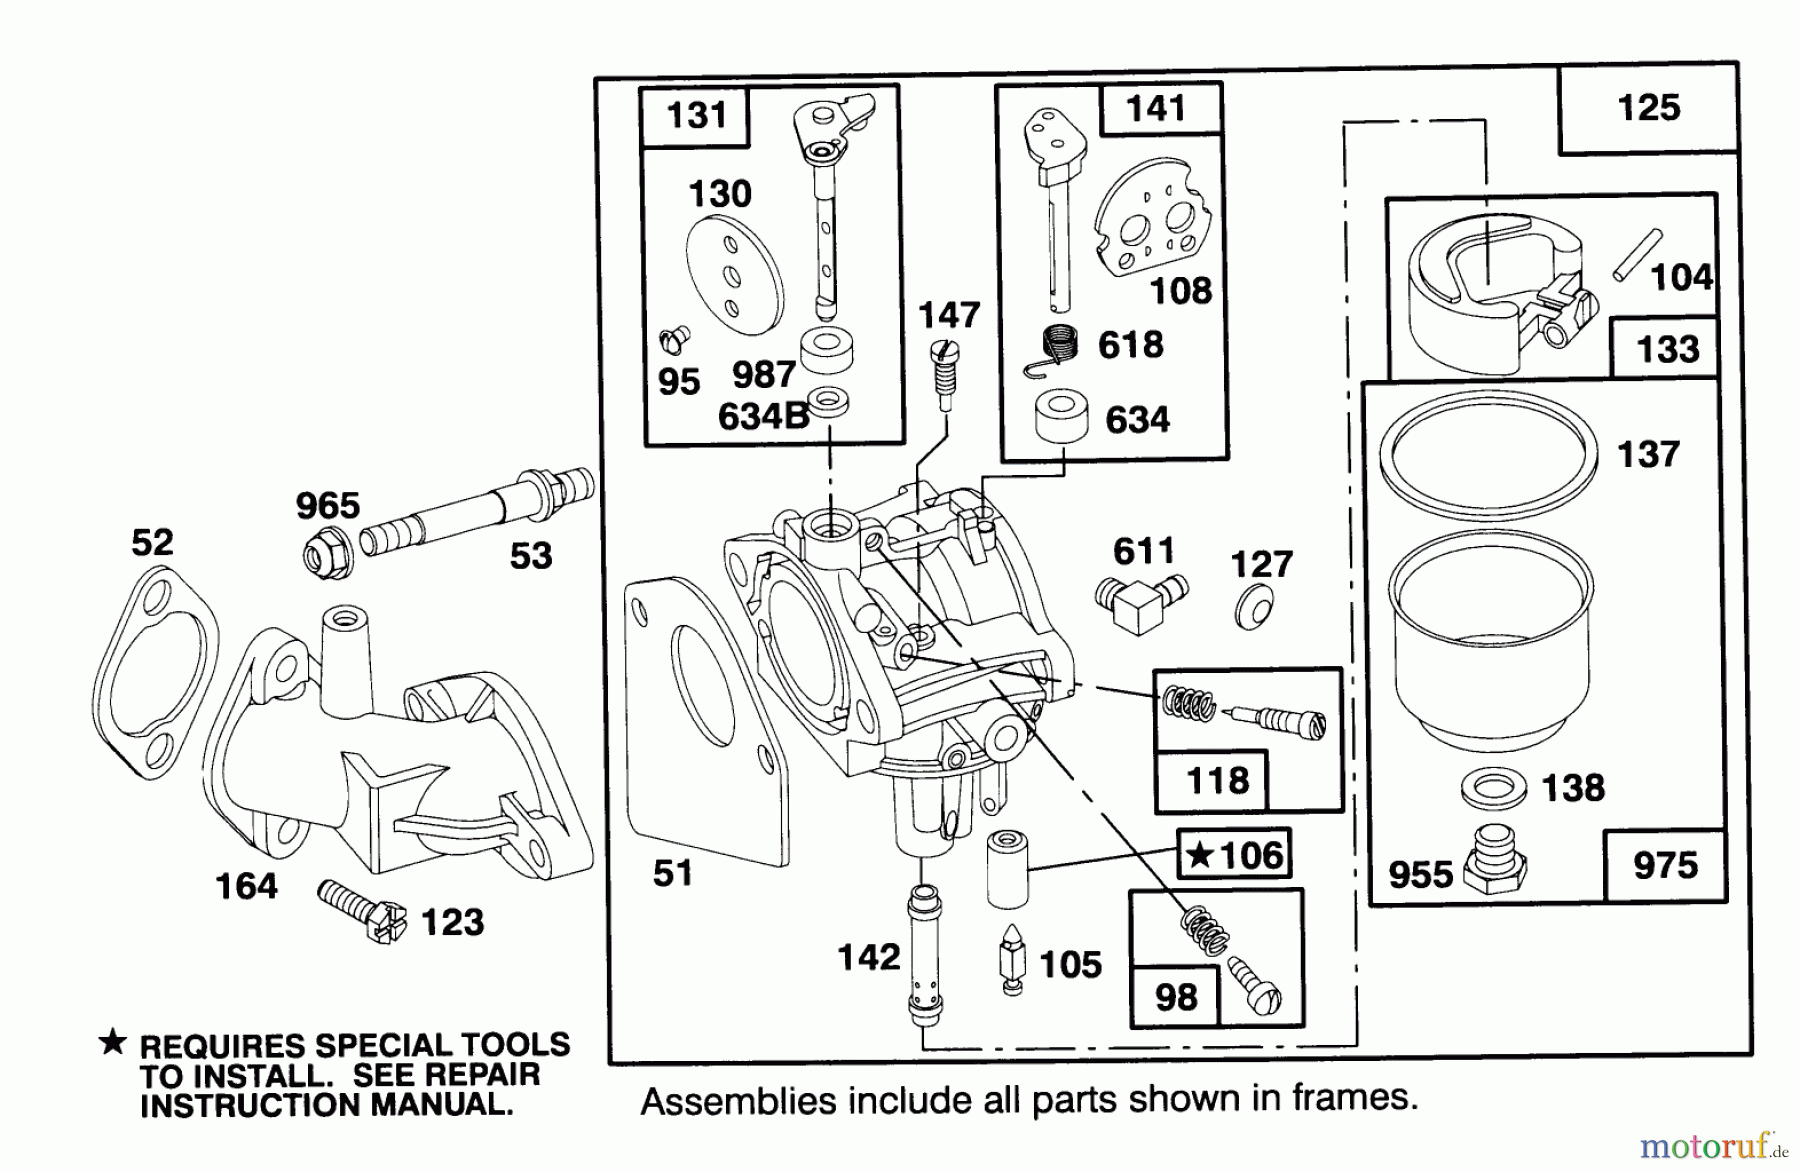  Toro Neu Mowers, Lawn & Garden Tractor Seite 1 71191 (13-38HXL) - Toro 13-38HXL Lawn Tractor, 1996 (6900001-6999999) ENGINE BRIGGS & STRATTON MODEL 28M707-0122-01 #3